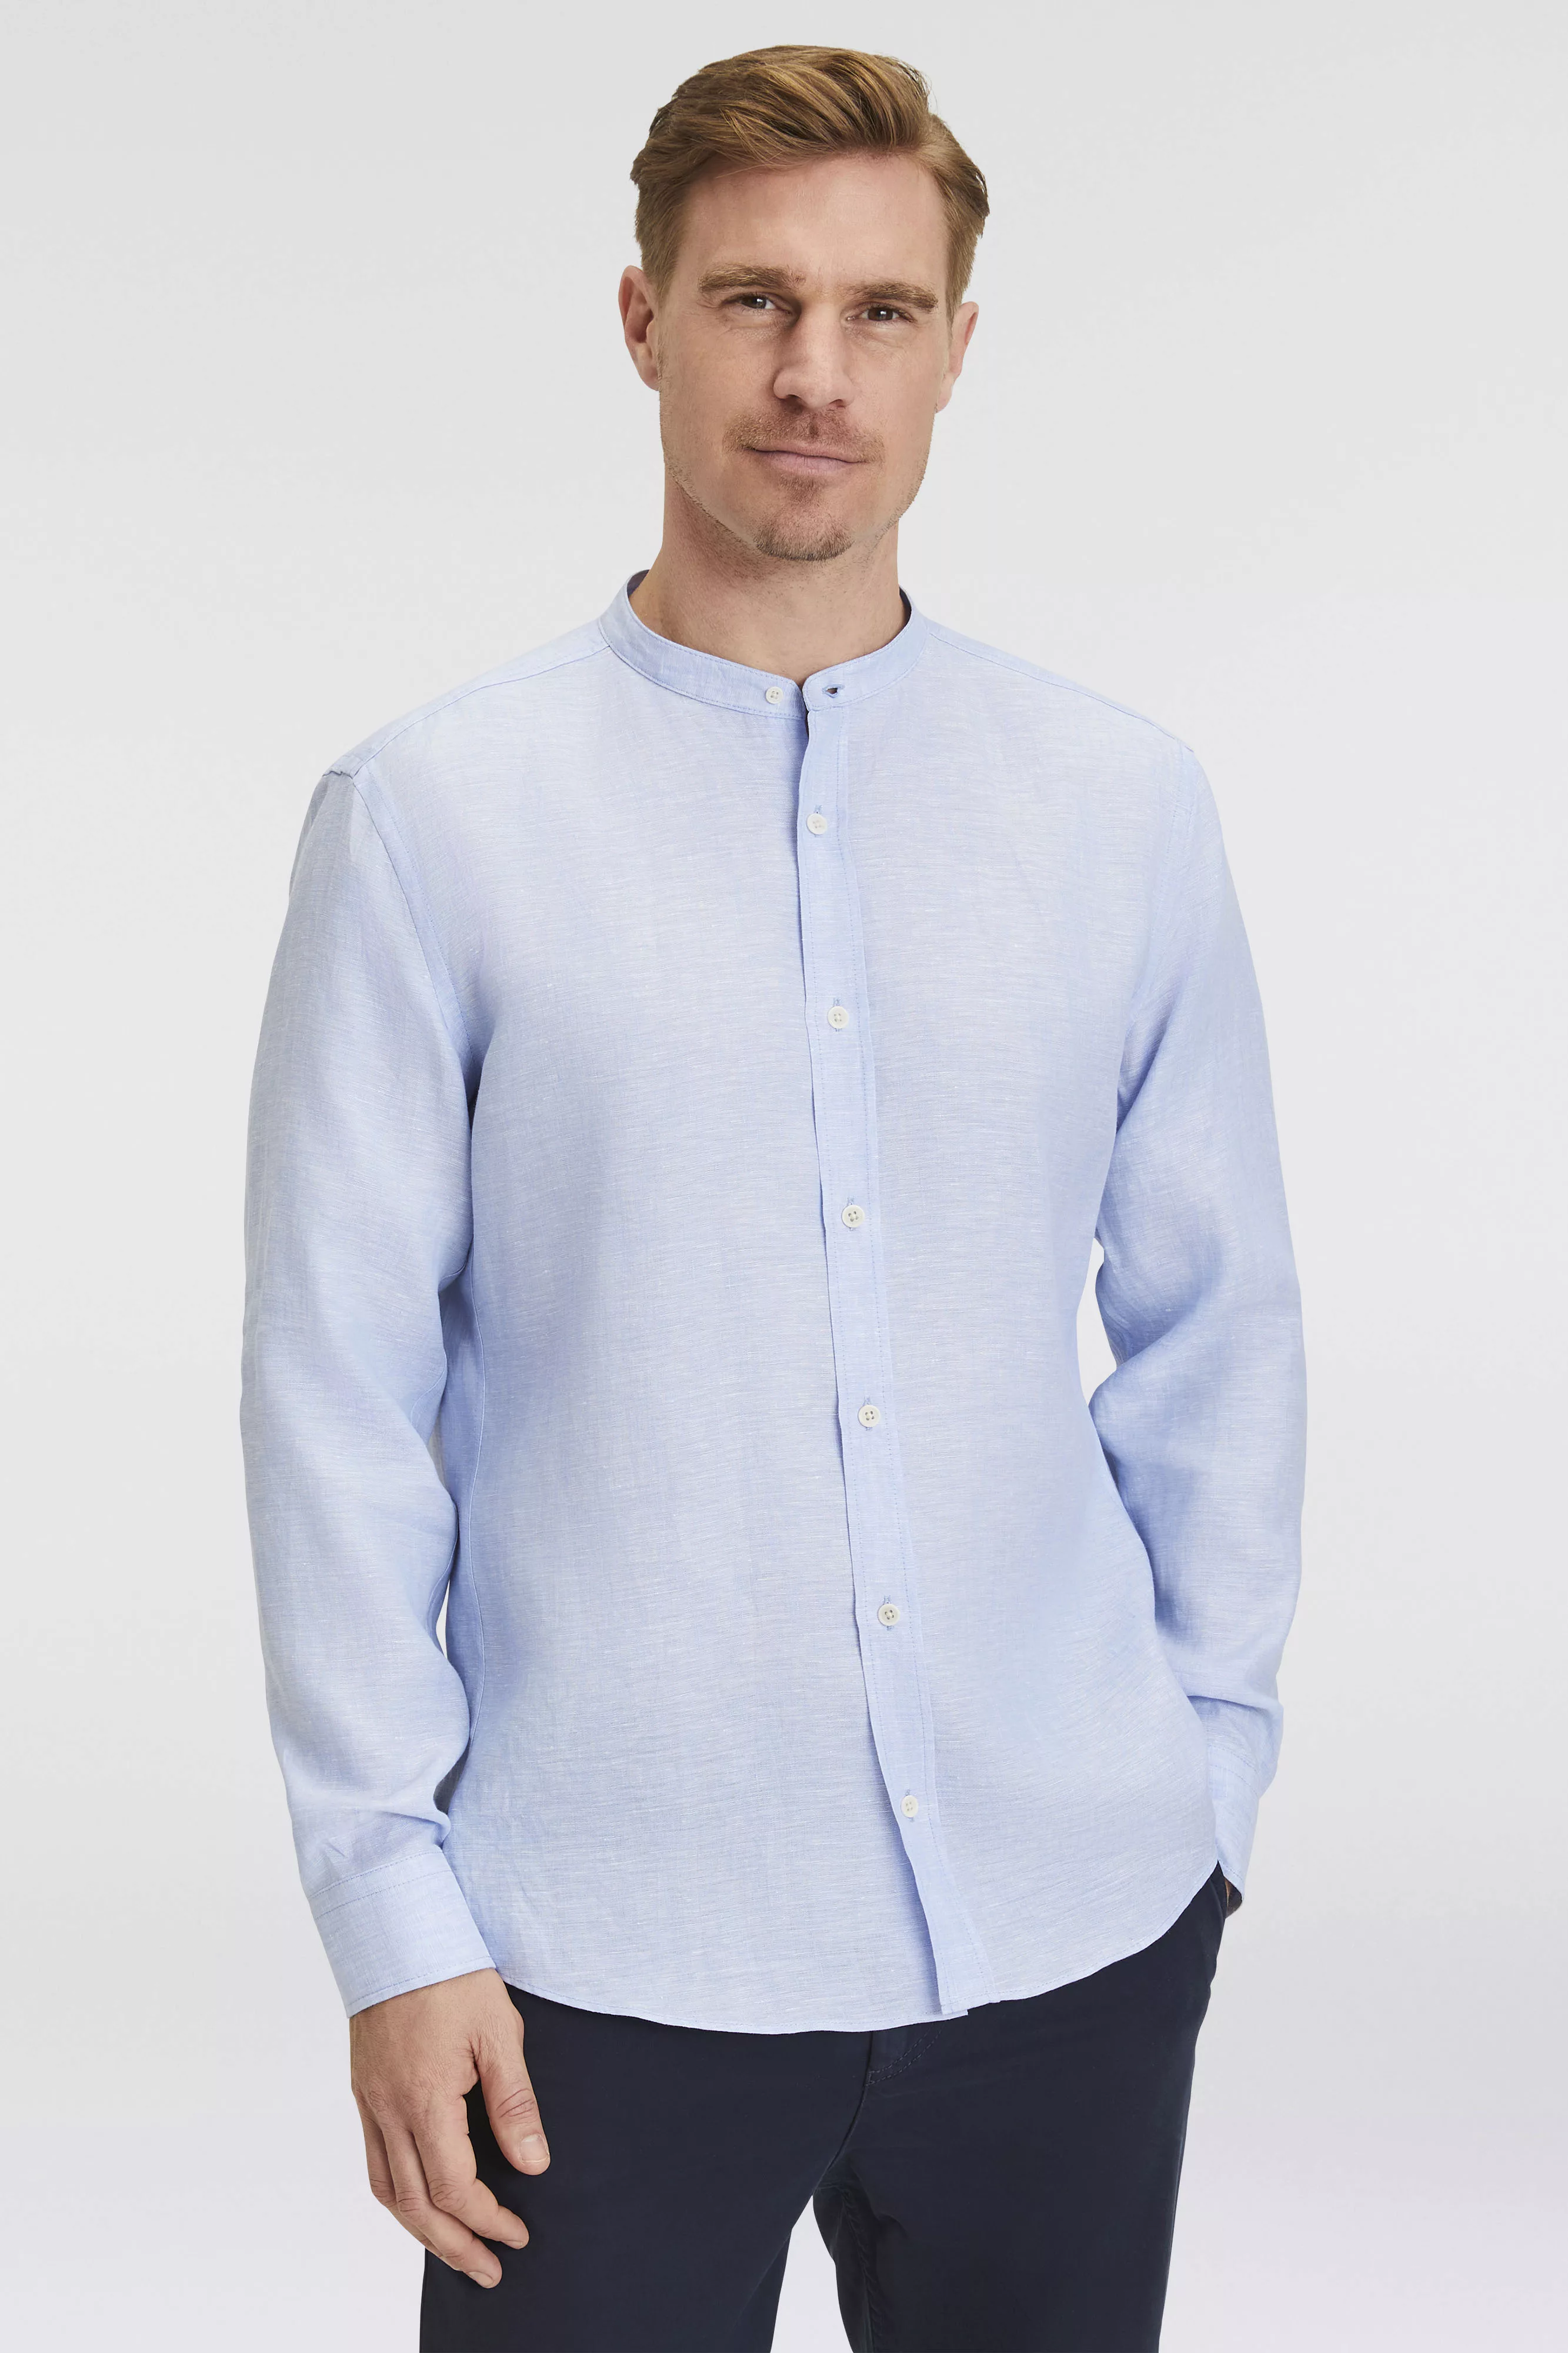 OLYMP Leinenhemd 4046/54 Hemden günstig online kaufen